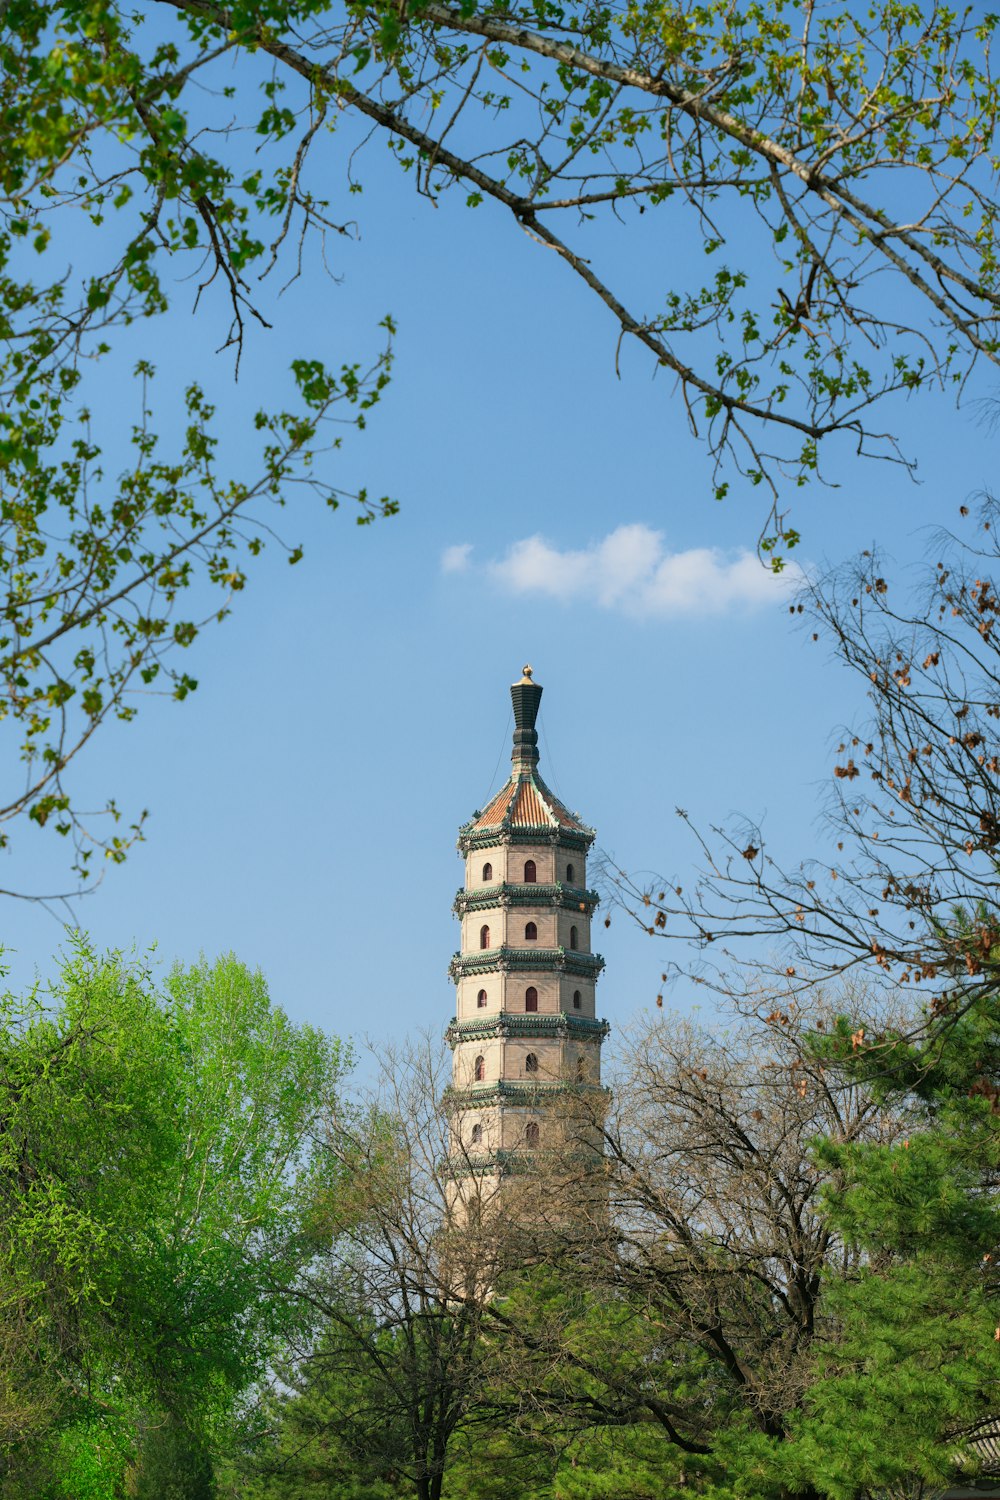 uma torre alta com uma estátua no topo dela